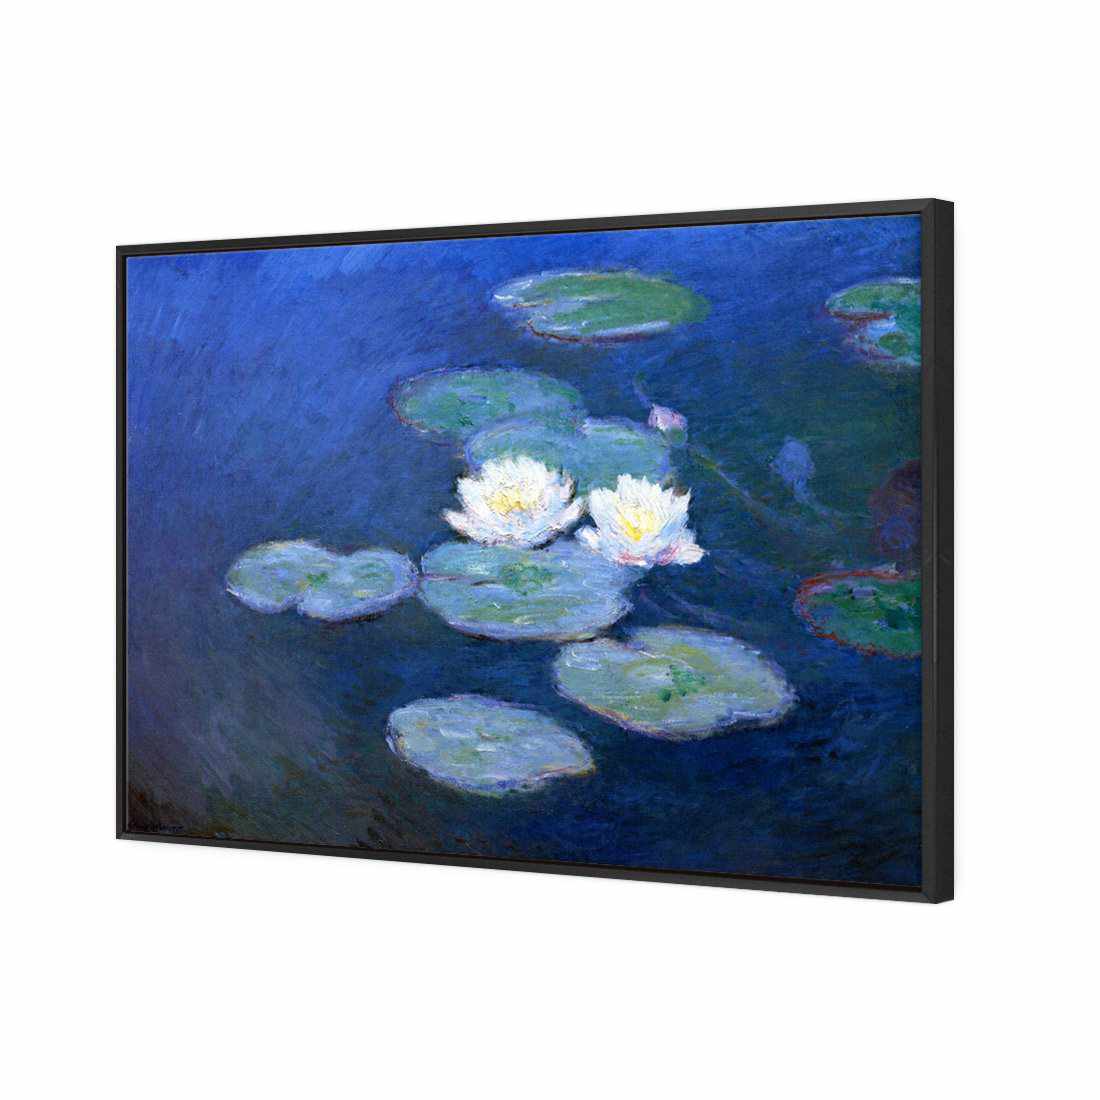 Water Lilies 7 - Monet Canvas Art-Canvas-Wall Art Designs-45x30cm-Canvas - Black Frame-Wall Art Designs